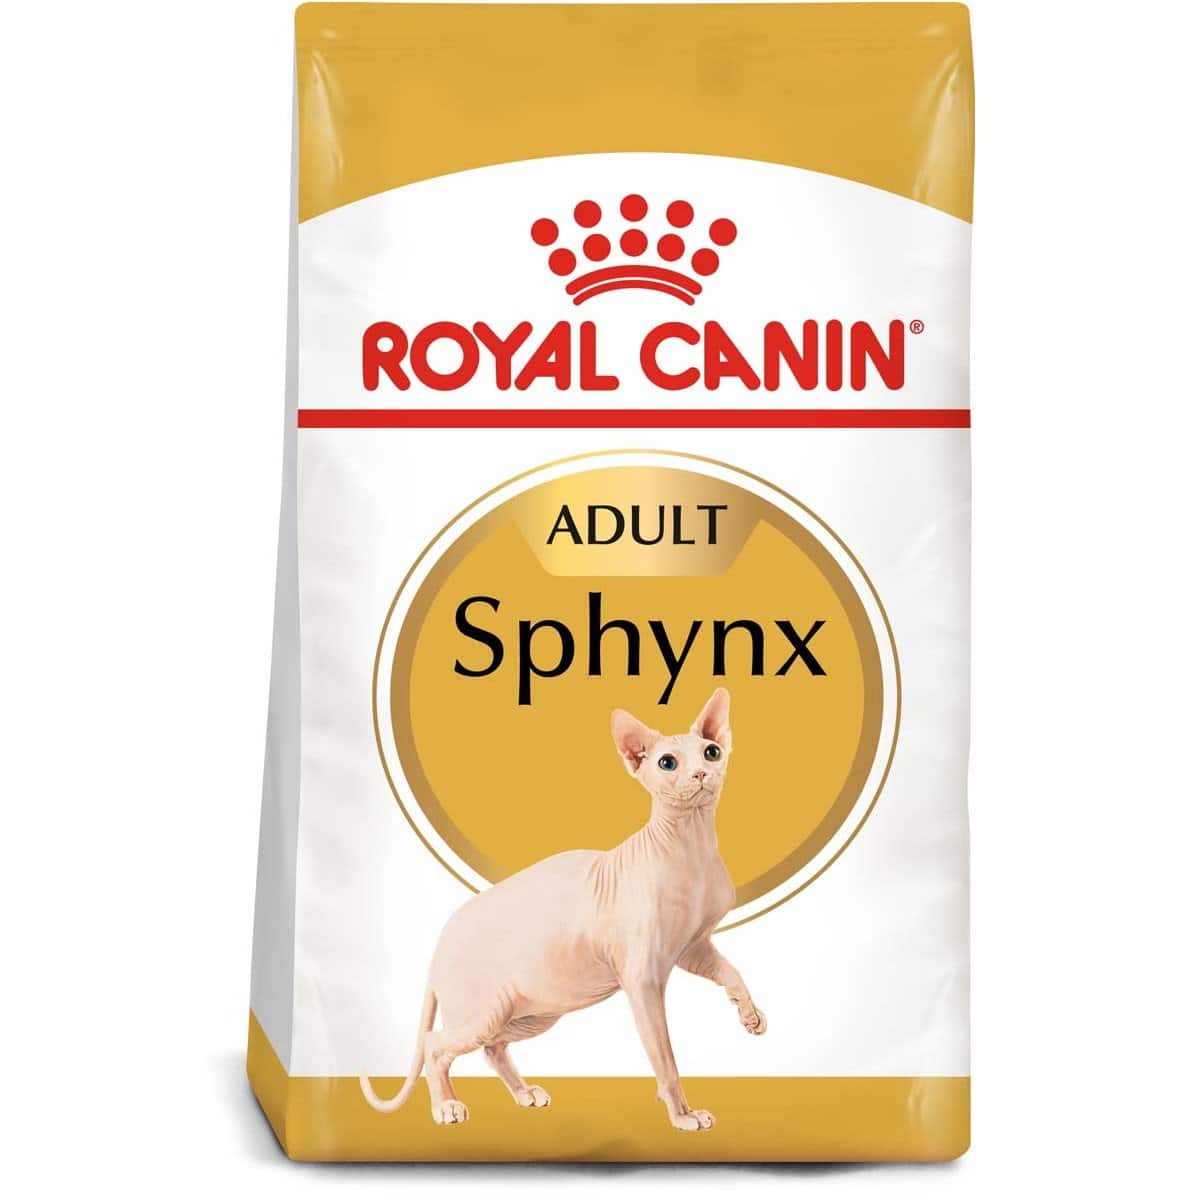 ROYAL CANIN Sphynx Adult Katzenfutter trocken 2x10kg